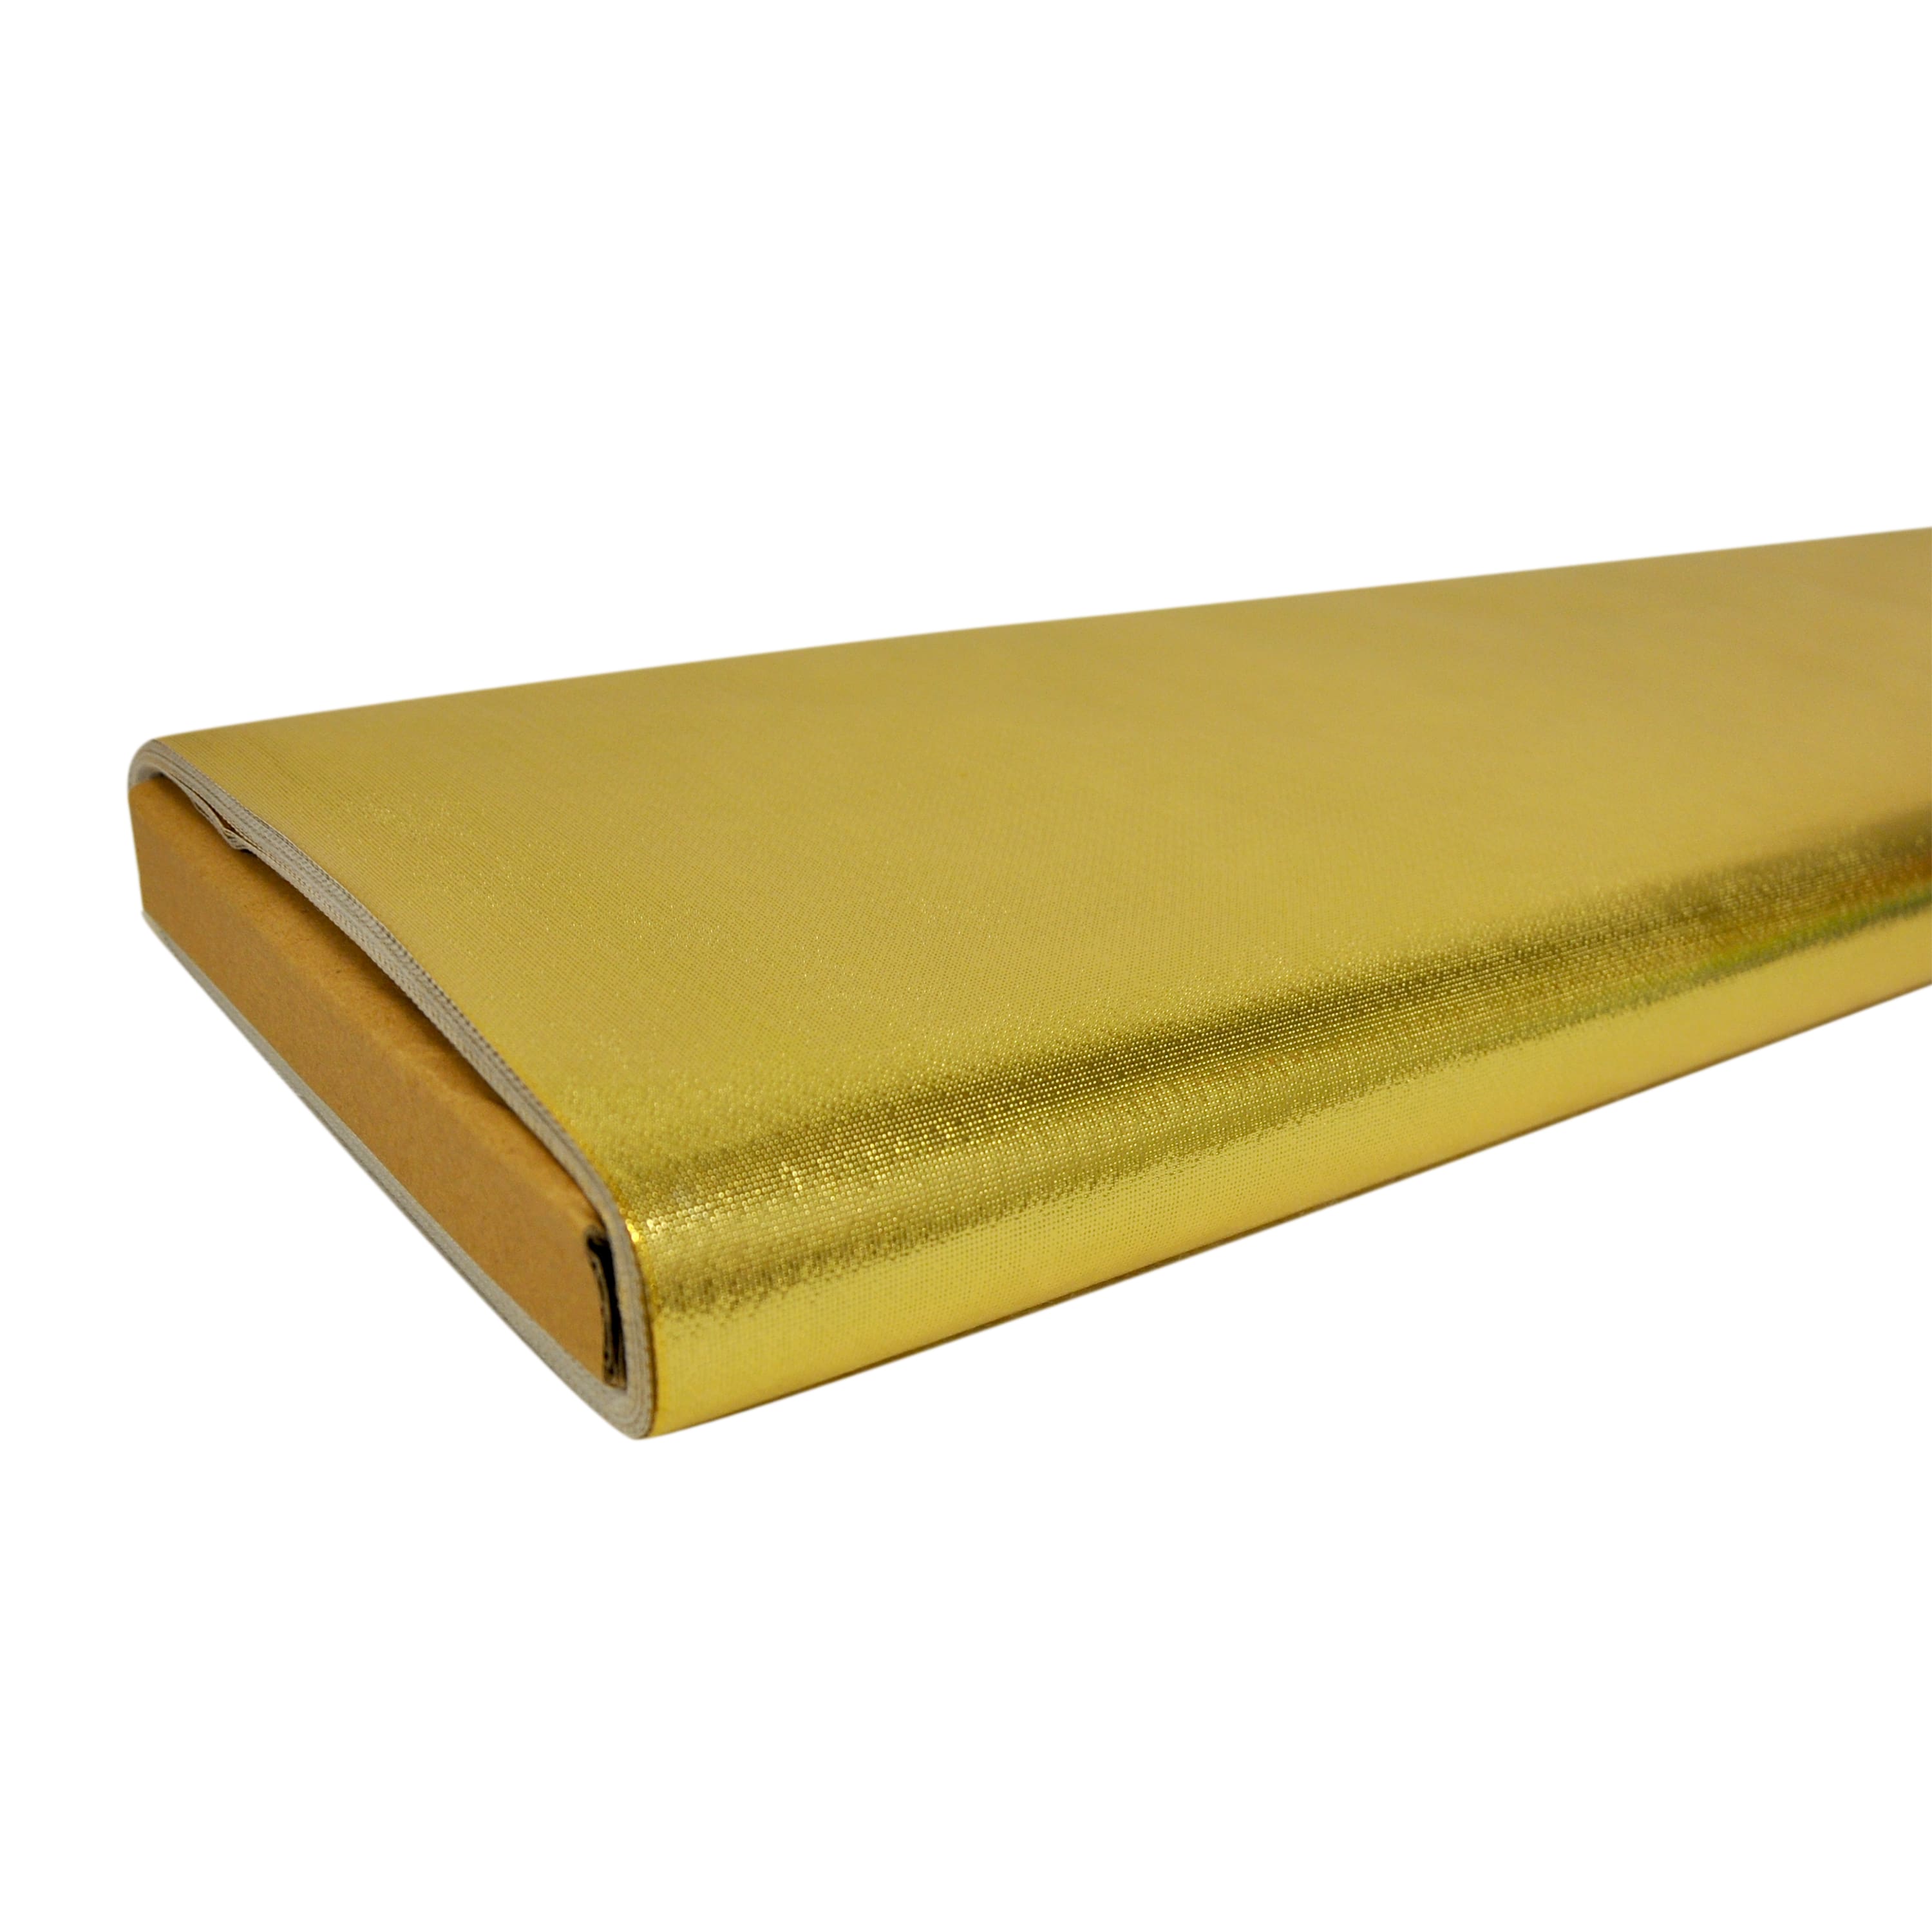 Oly-Fun&#x2122; Metallic Gold Multi-Purpose Fabric Bolt